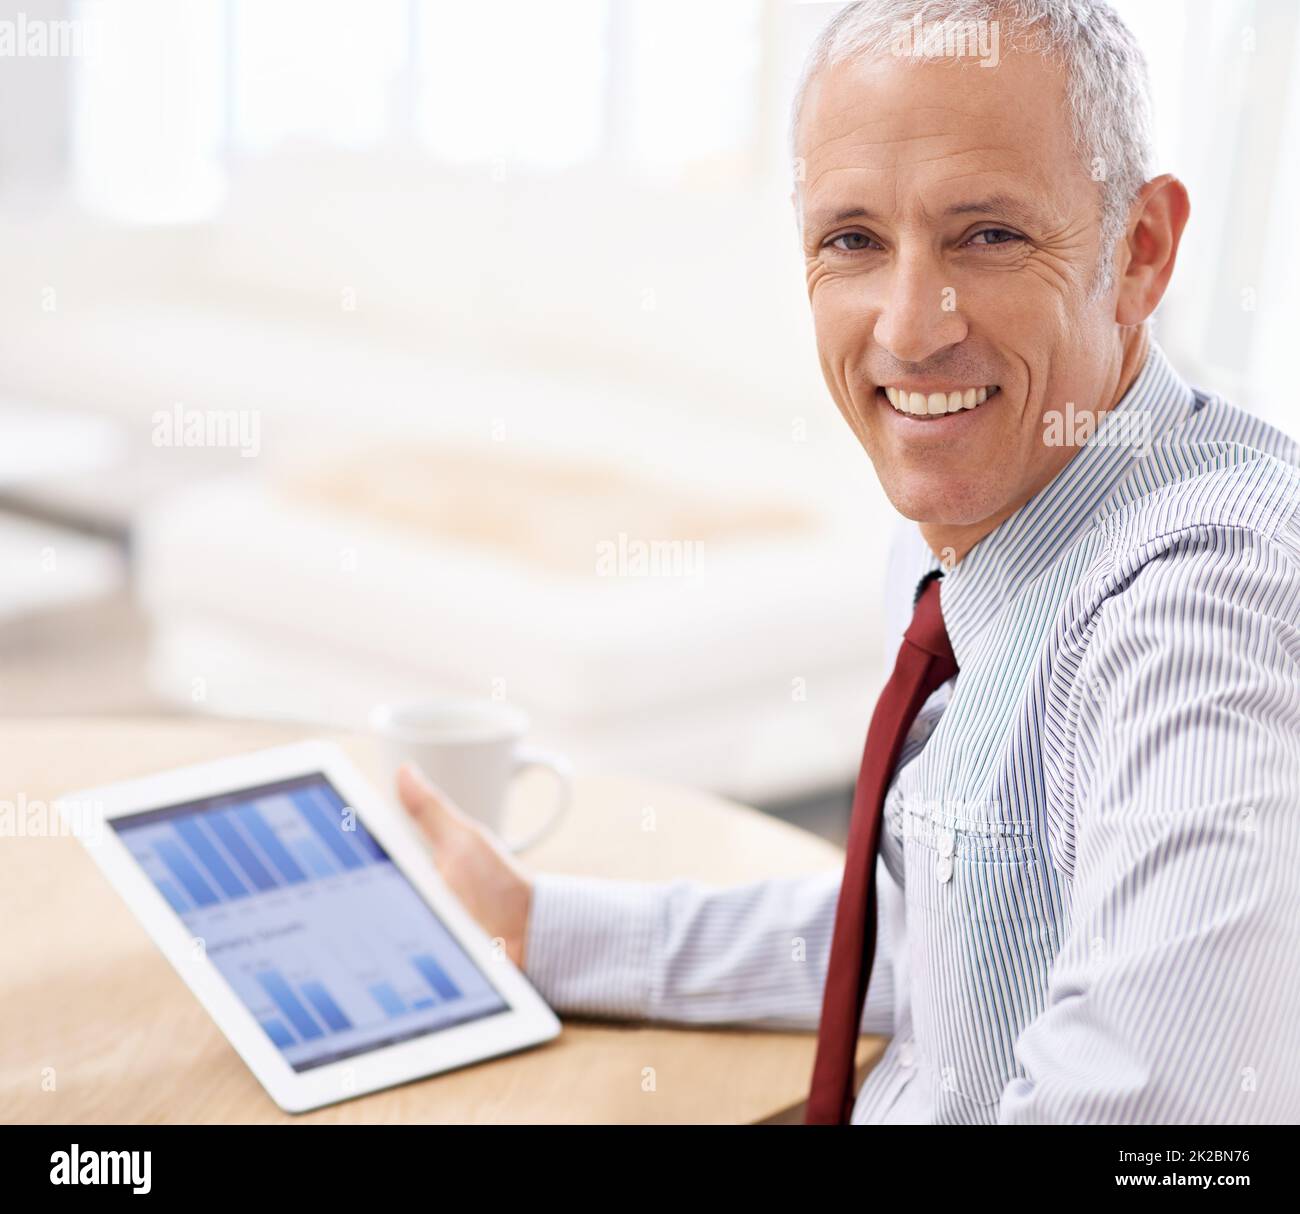 Ich mag, was ich sehe. Aufnahme eines Geschäftsmannes, der zufrieden über die Quartalsergebnisse auf seinem Tablet sieht. Stockfoto